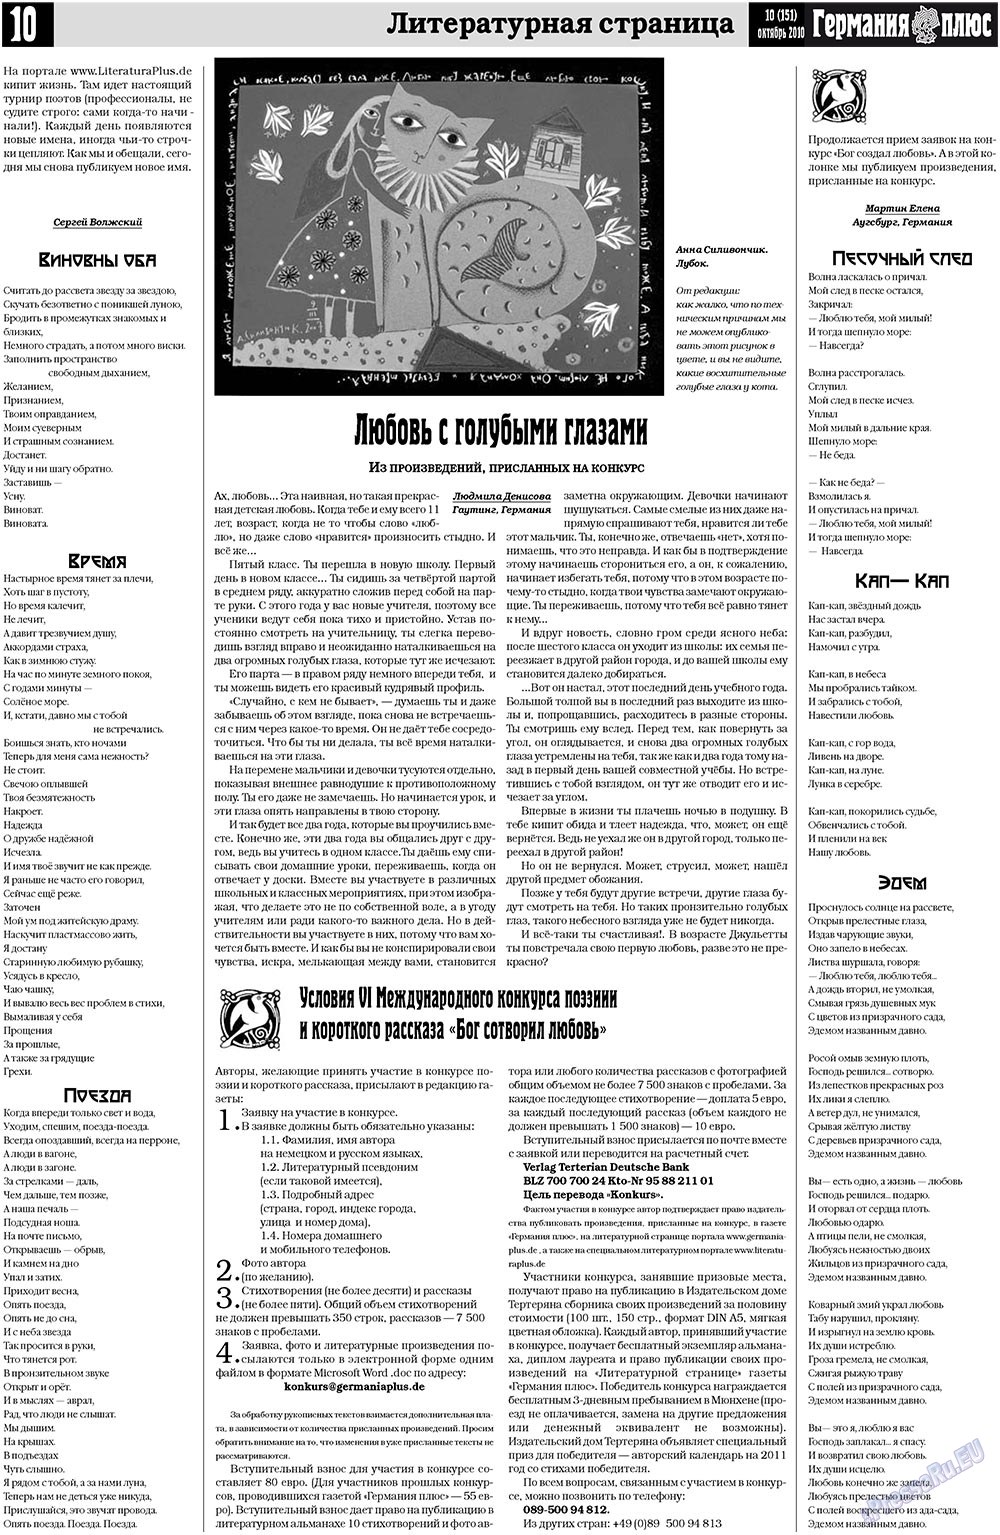 Германия плюс, газета. 2010 №10 стр.10